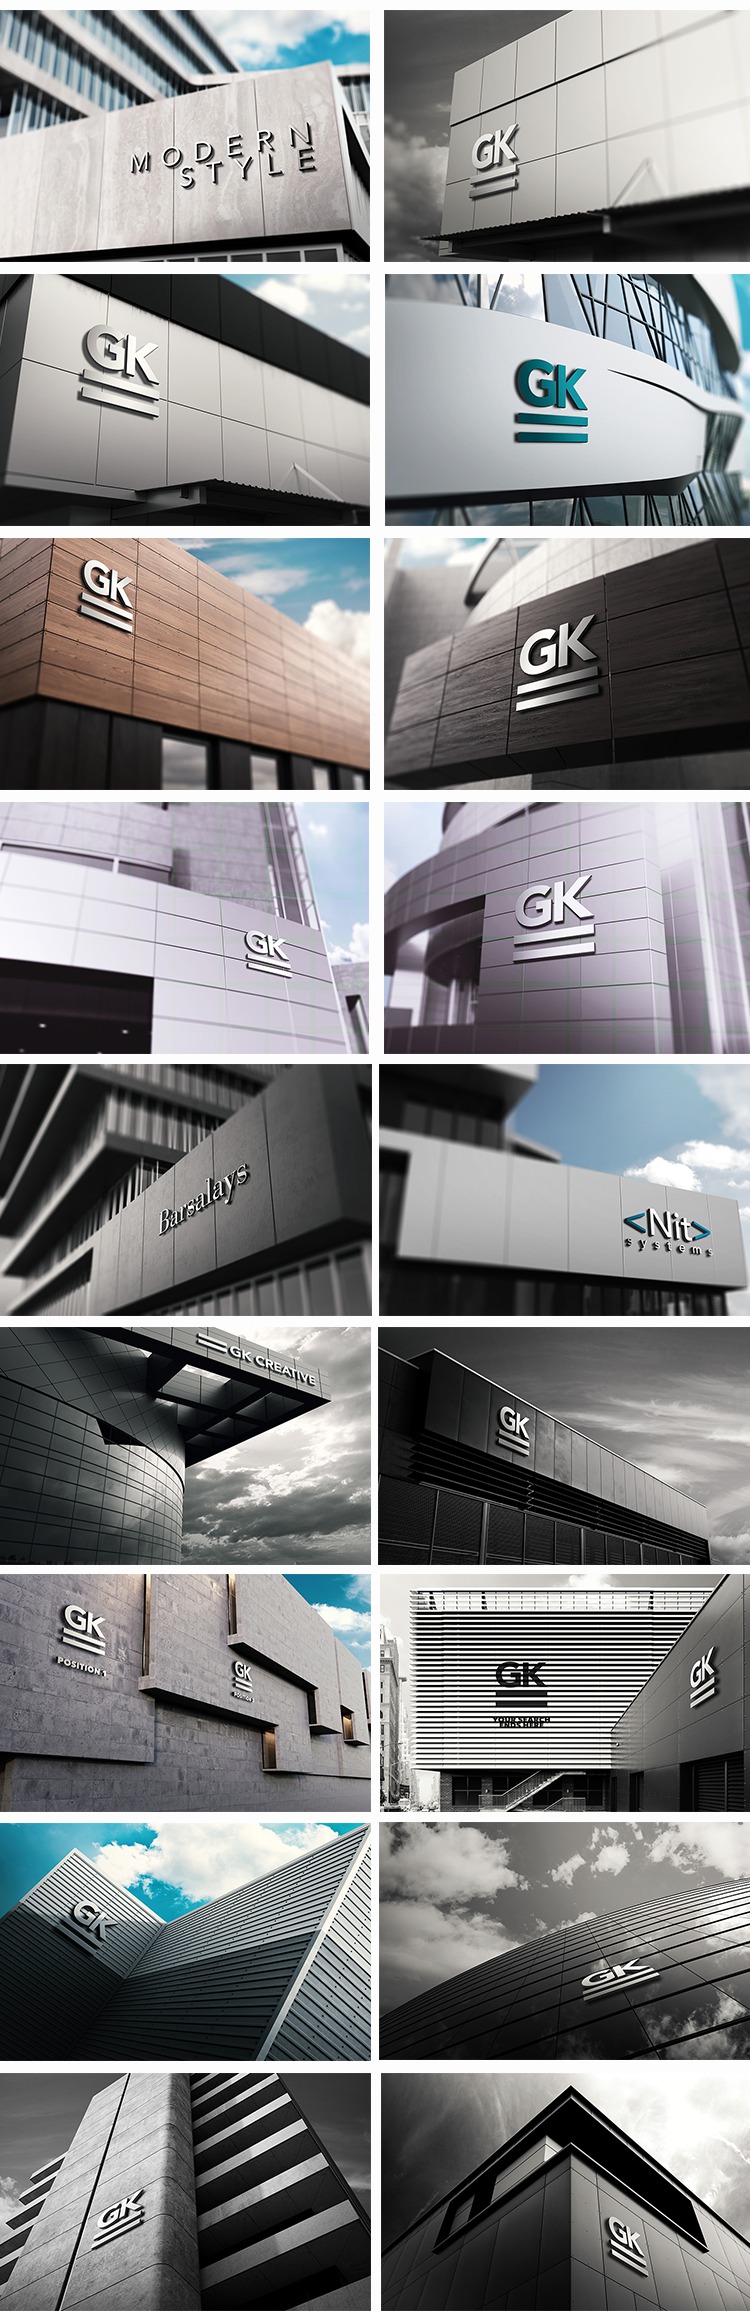 高端大气企业楼面3D立体logo标志智能贴图样机模板设计素材 样机素材 第3张